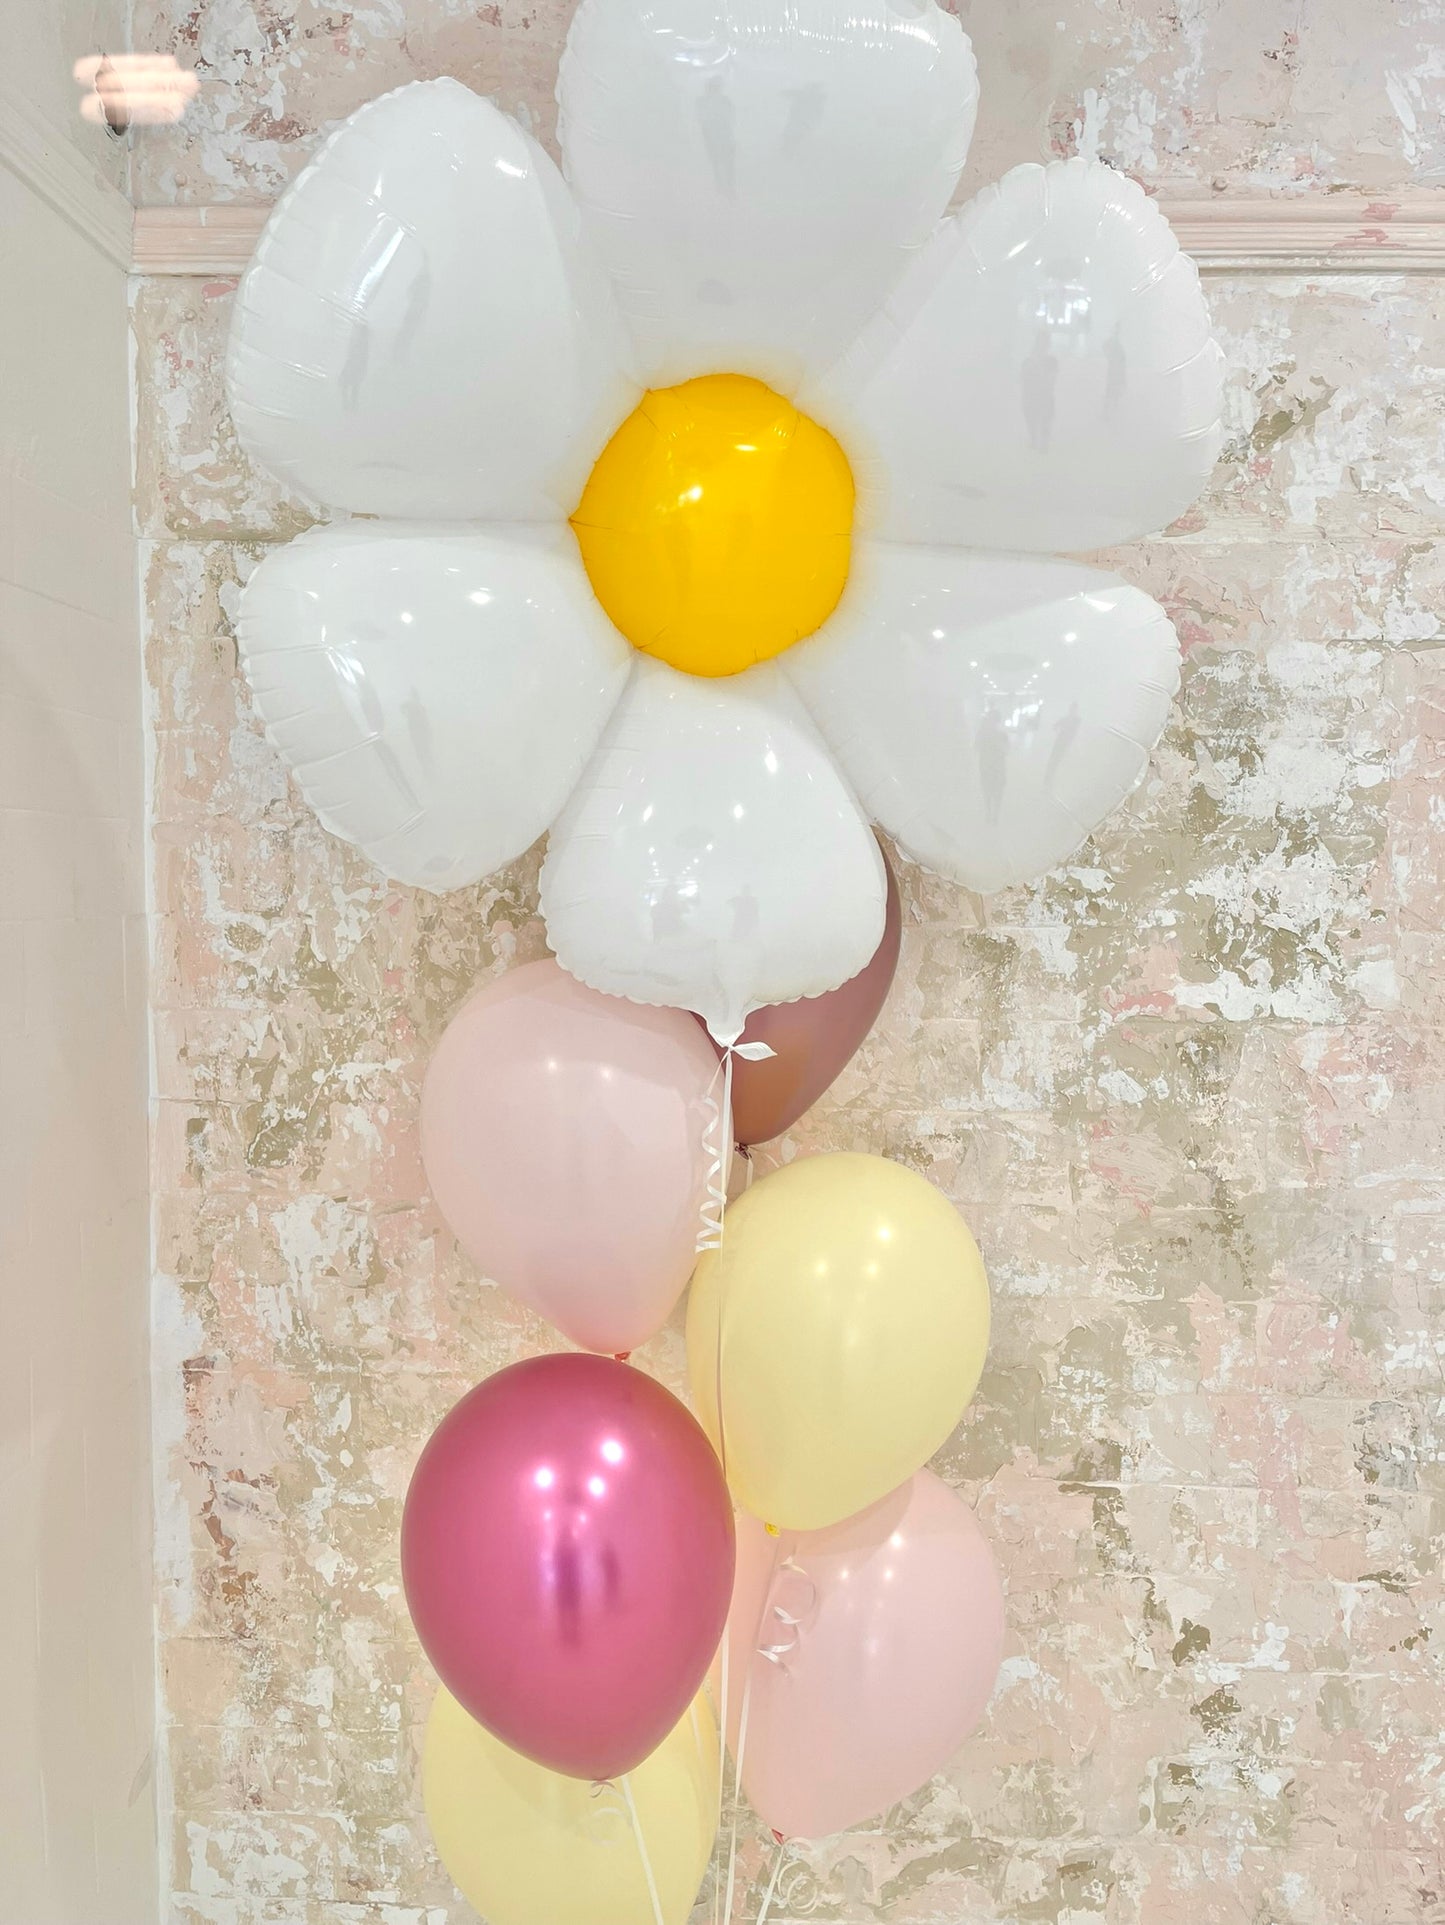 Daisy and 6 latex balloons